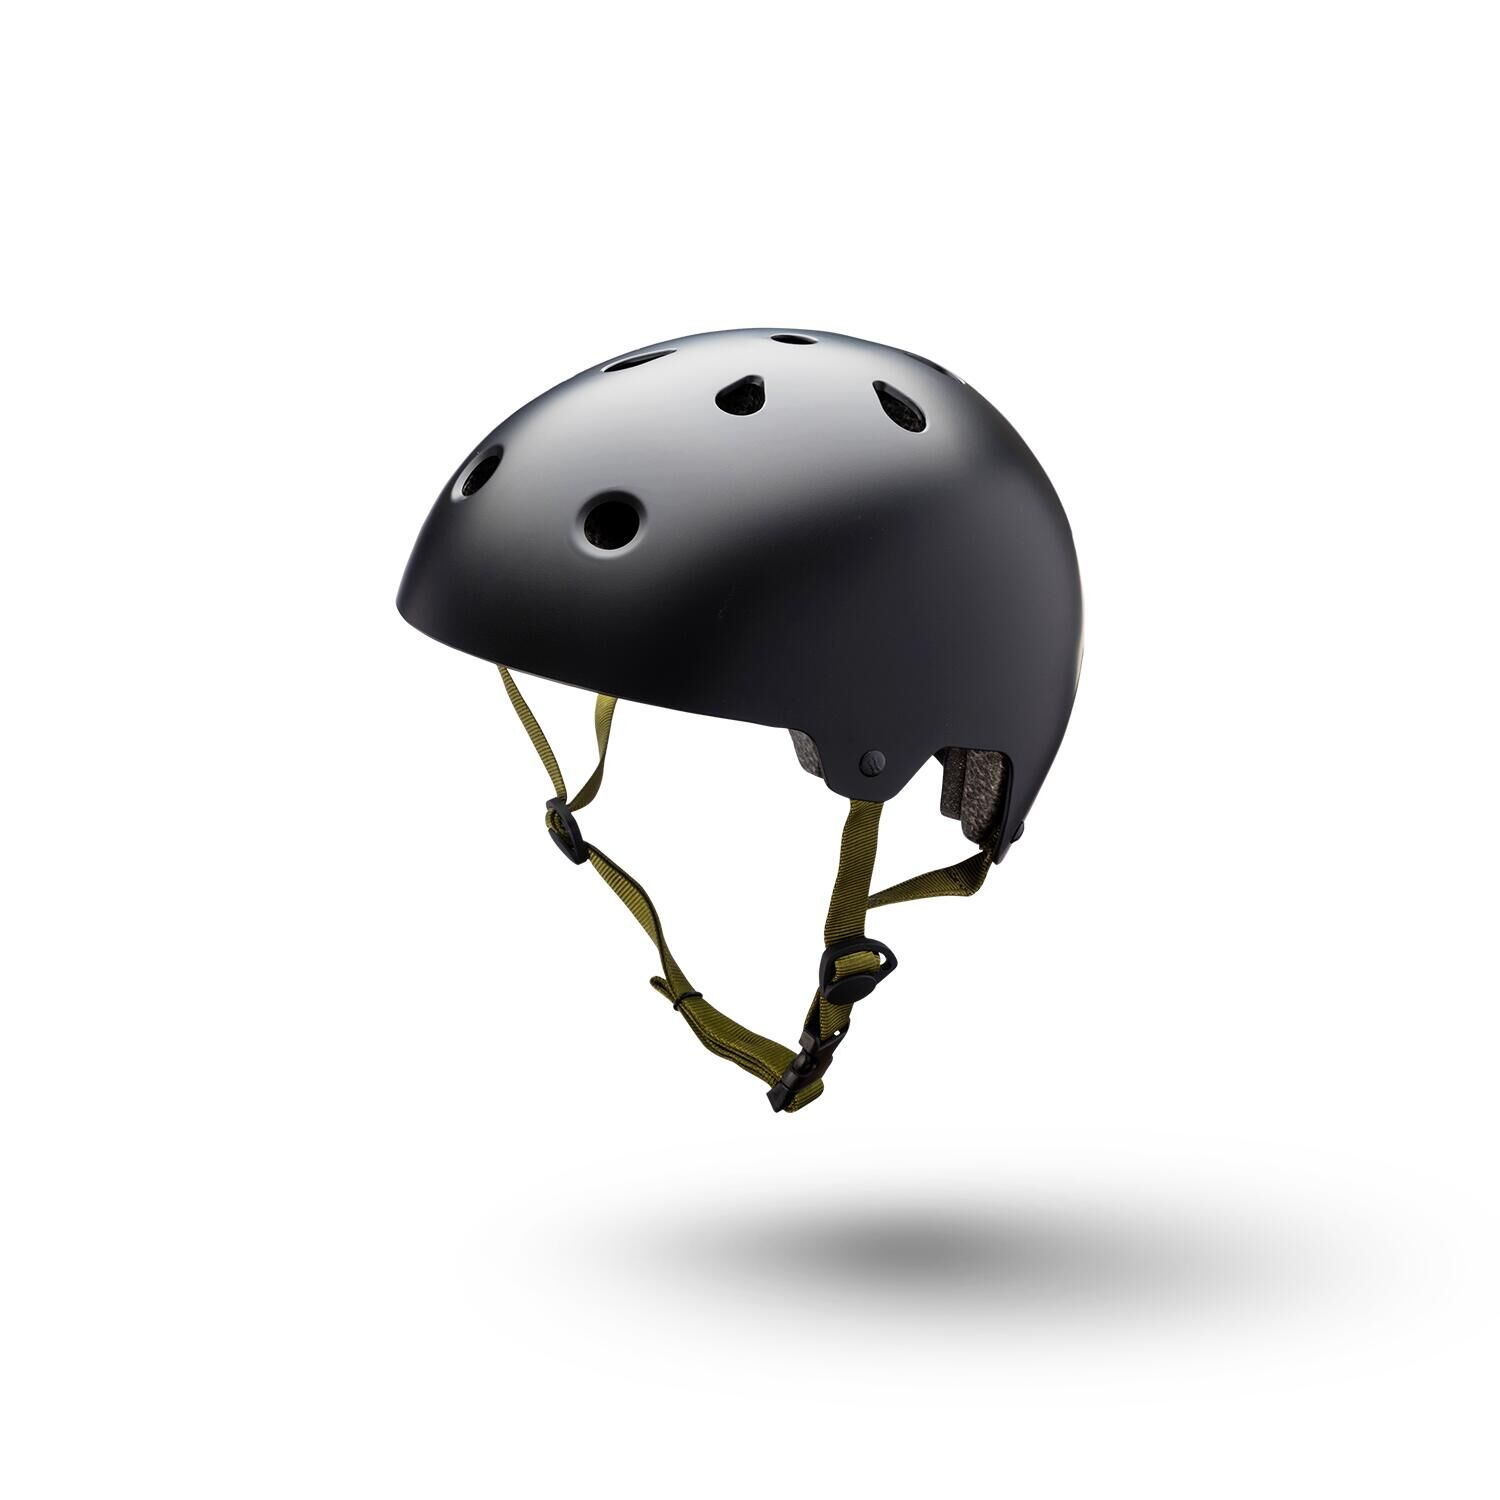 KALI Kali Maha 2.0 Bucket Helmet - Solid Matt Black